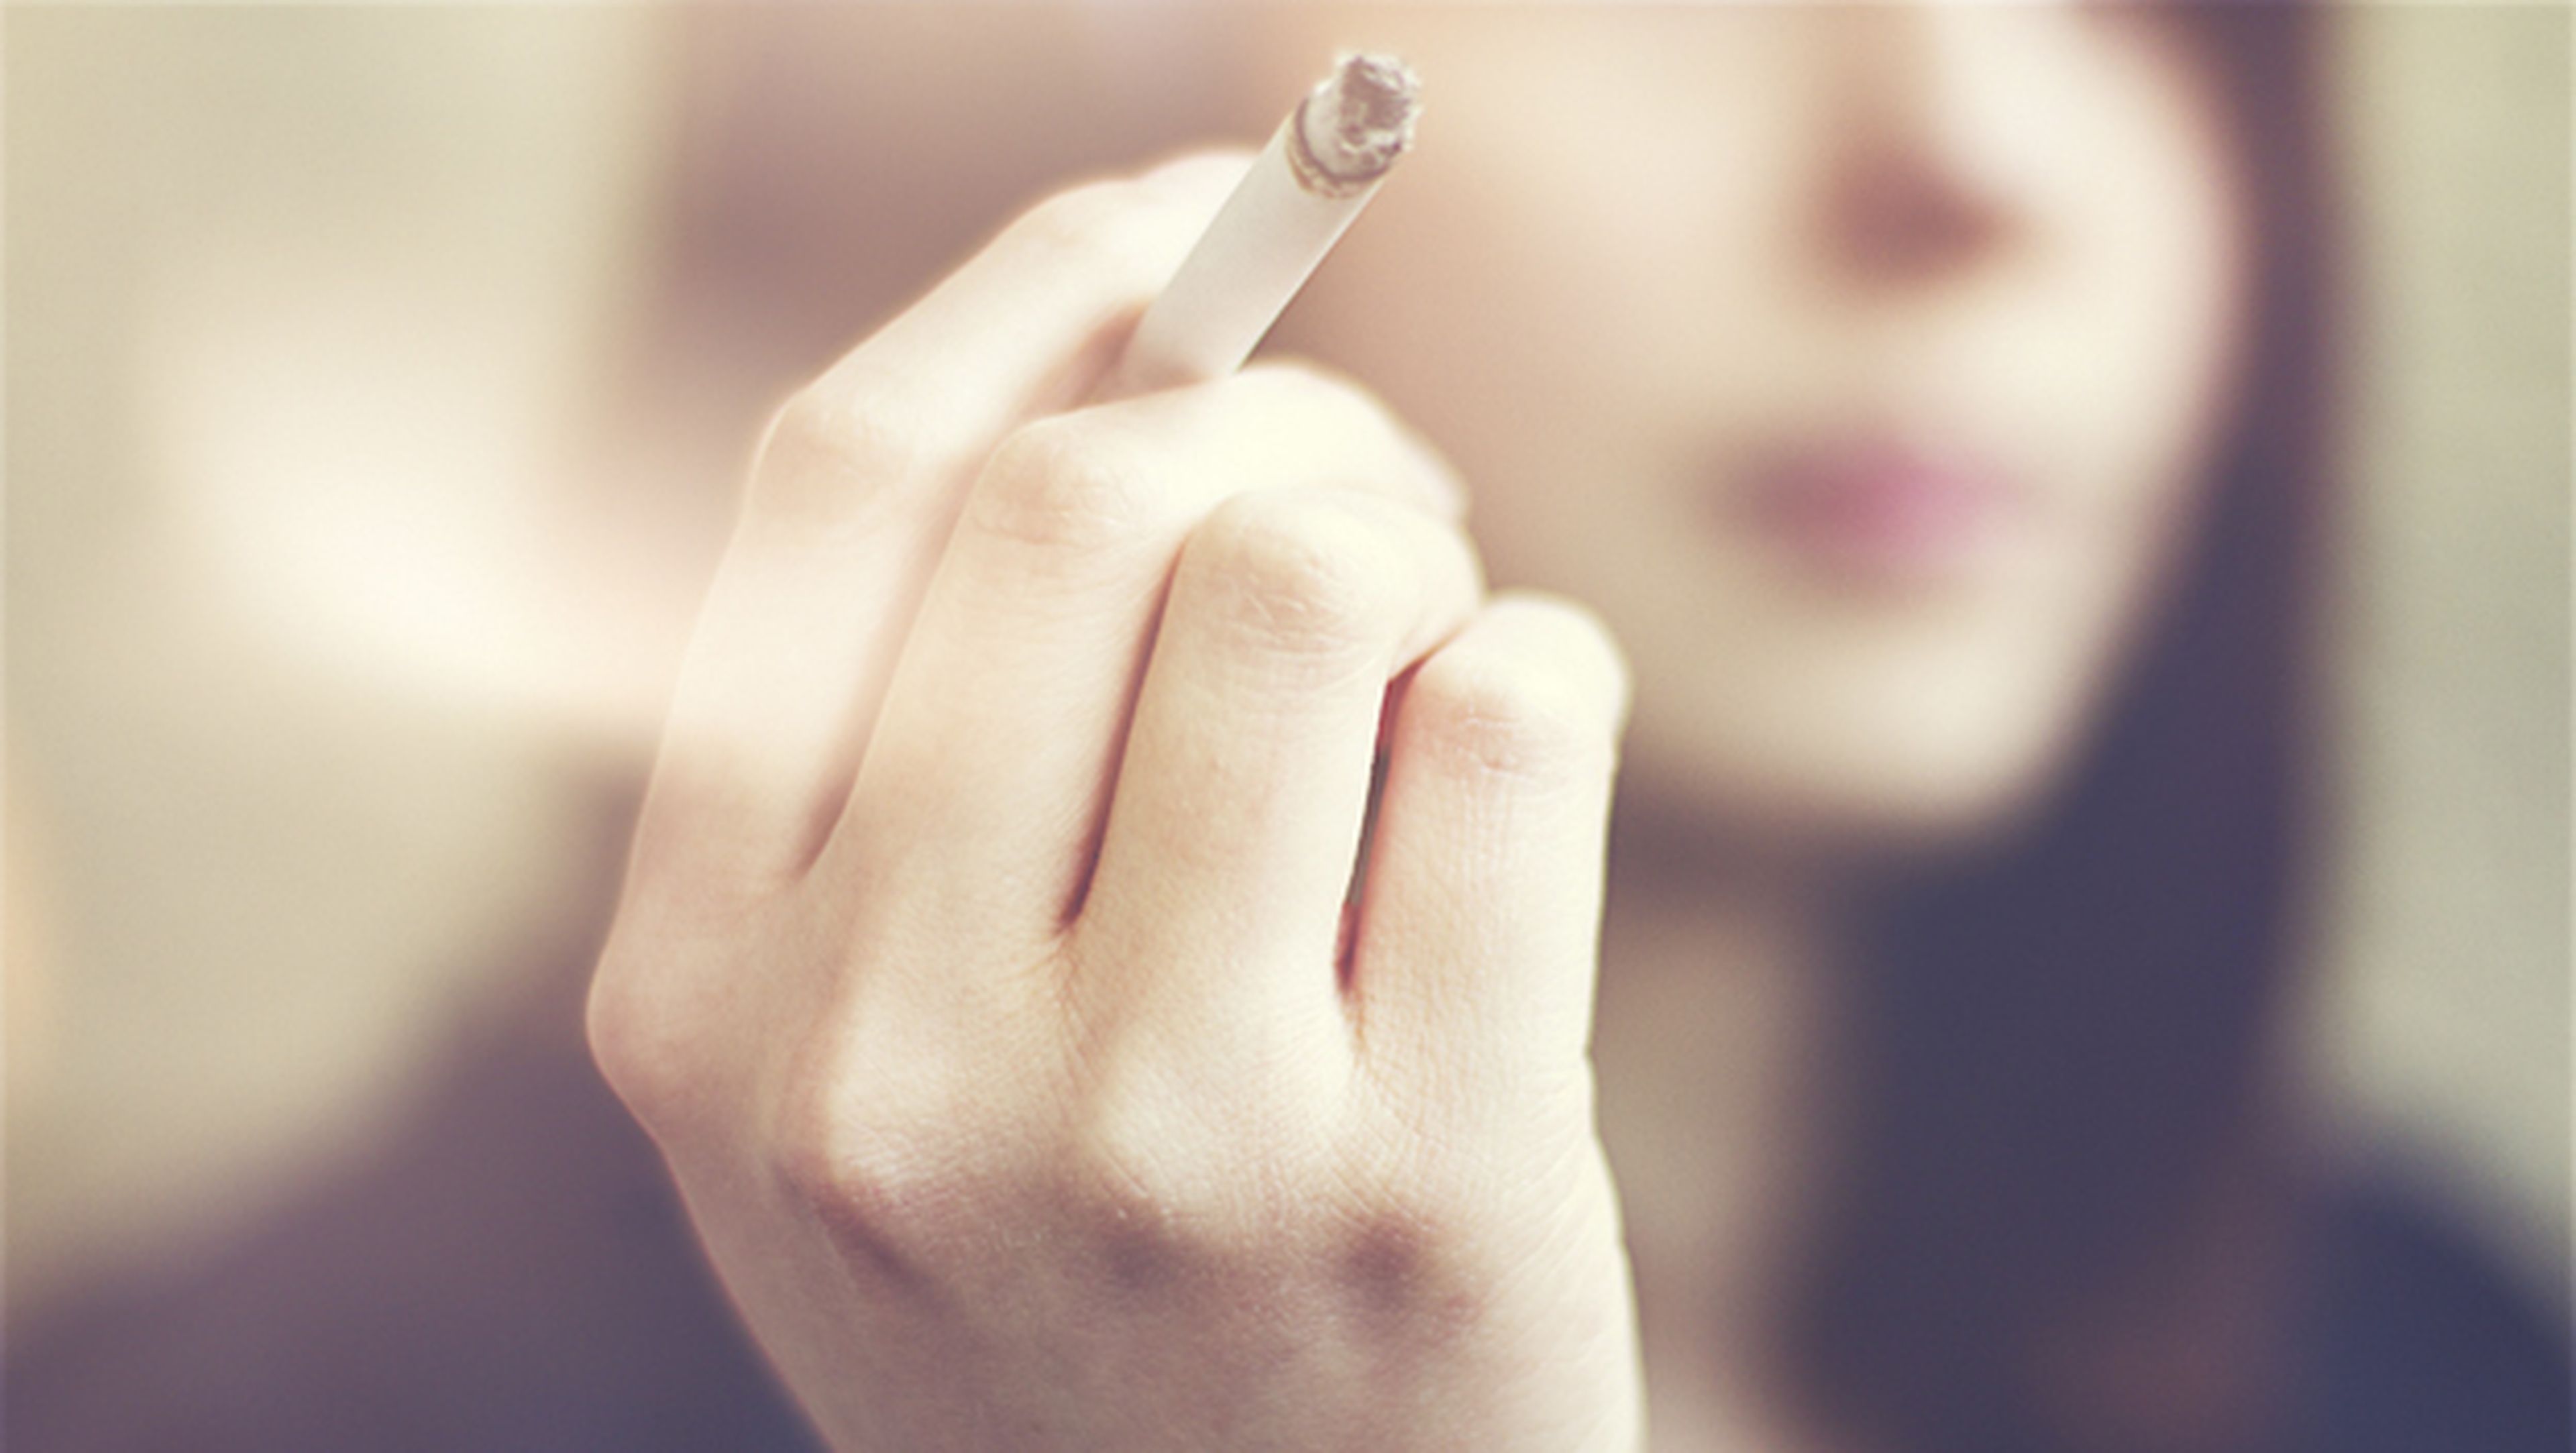 Rusia podría prohibir la compra de tabaco a todos los nacidos en 2015 y después